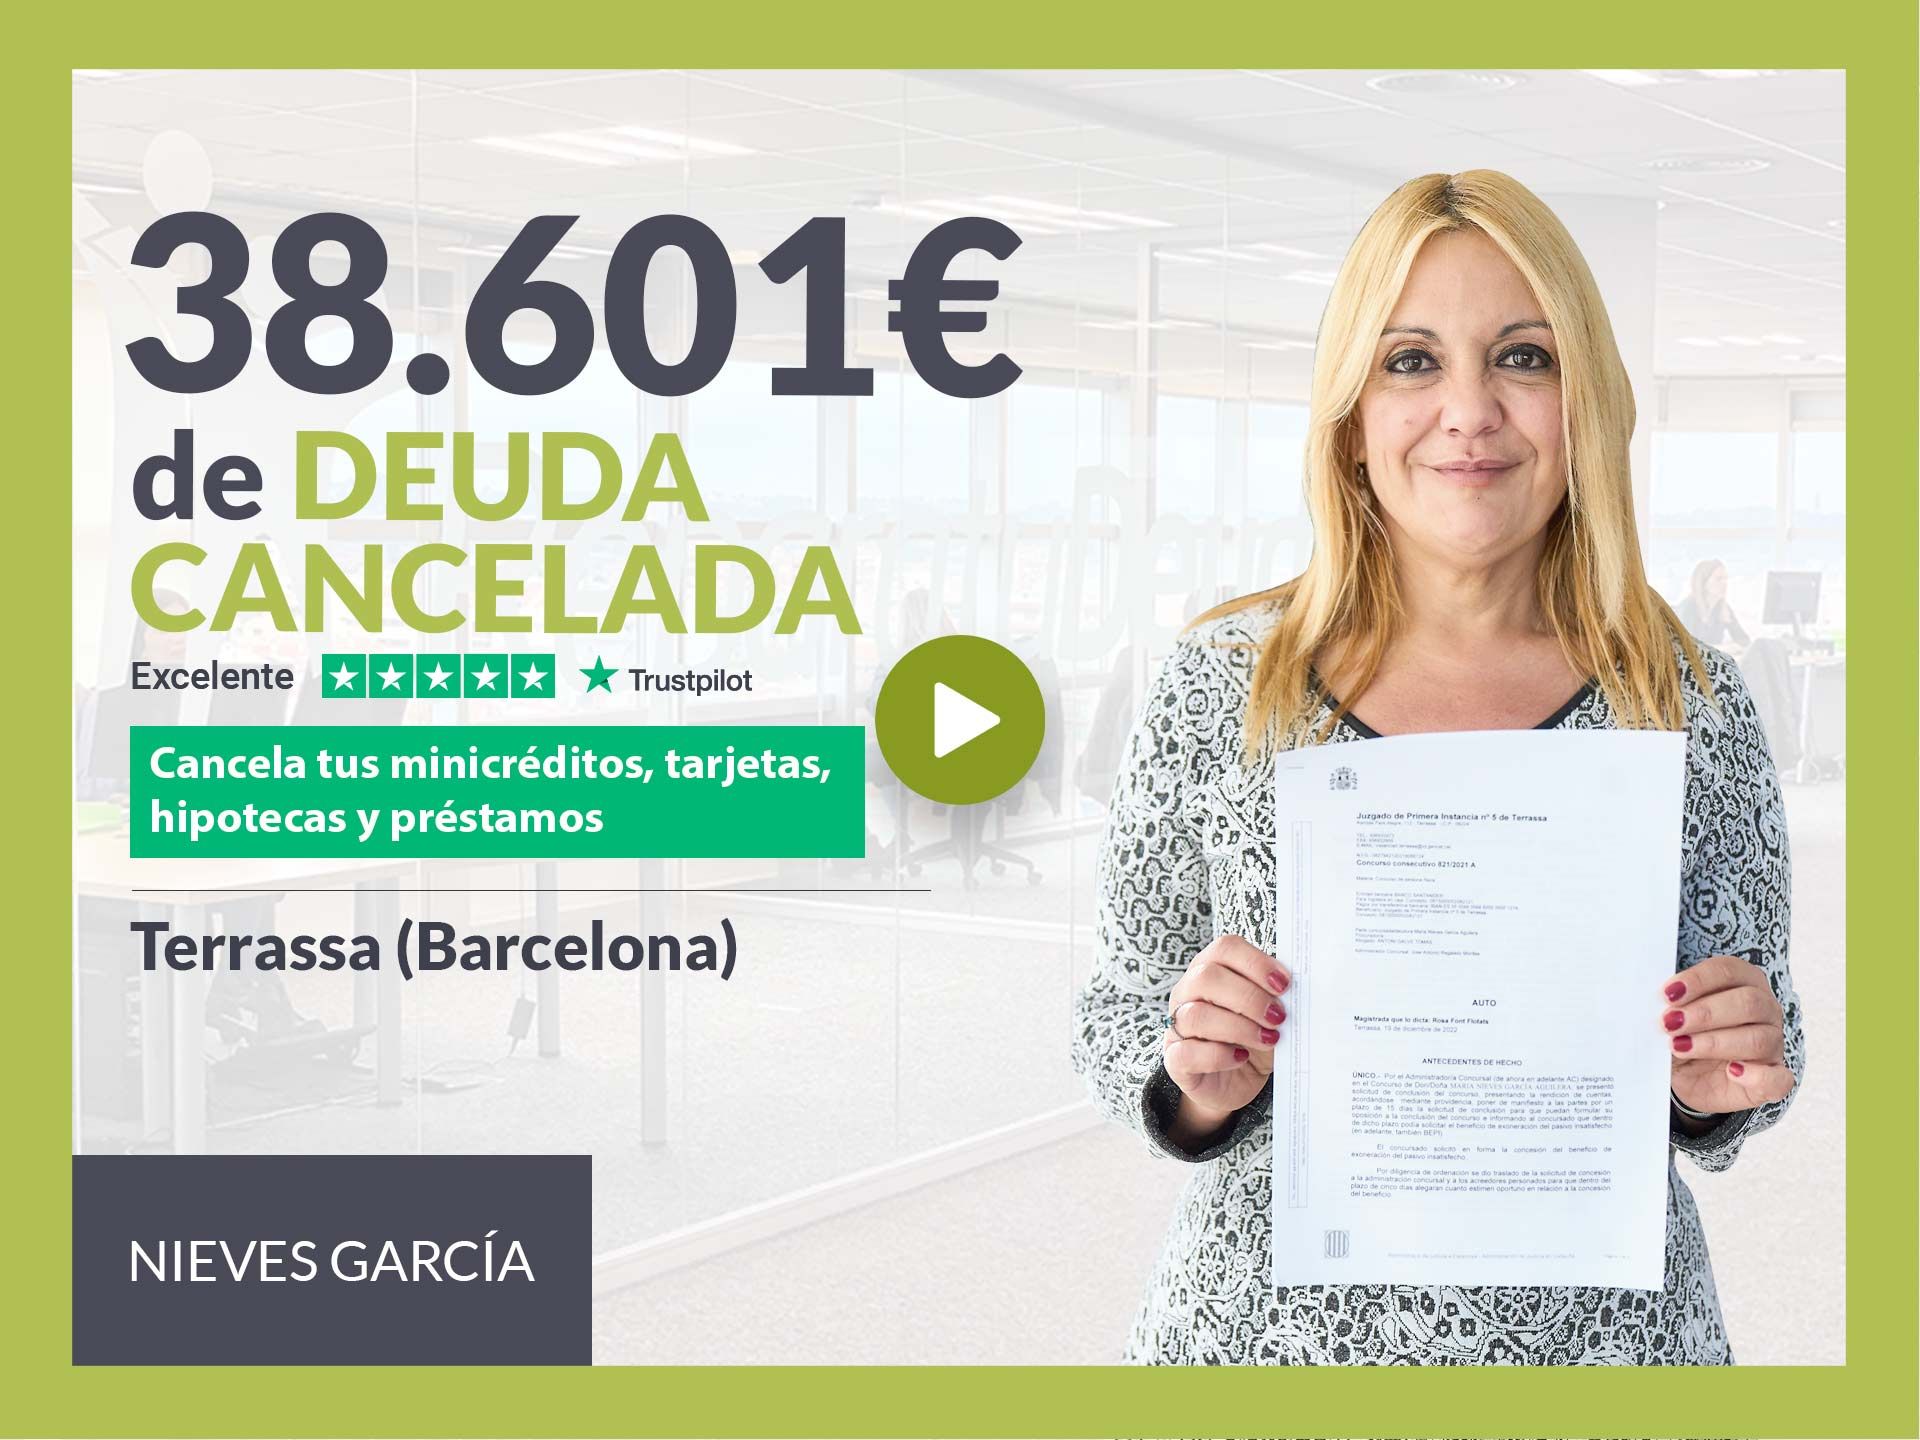 Repara tu Deuda Abogados cancela 38.601? en Terrassa (Barcelona) con la Ley de Segunda Oportunidad